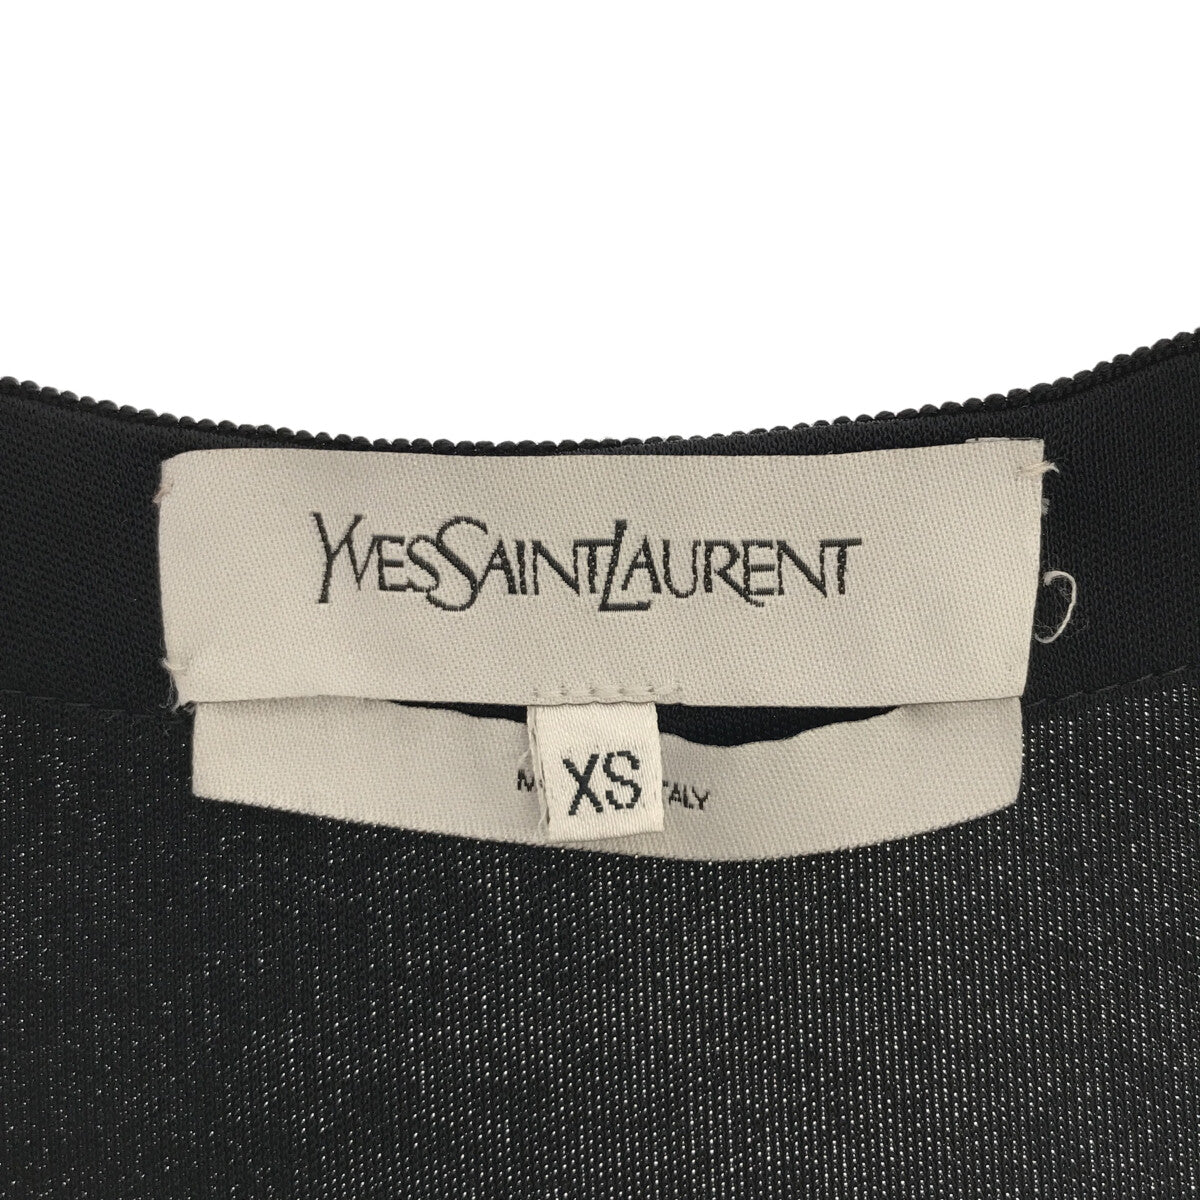 YVES SAINT LAURENT / イヴサンローラン | フロントギャザーデザイン トップス | XS | ネイビー | レディース